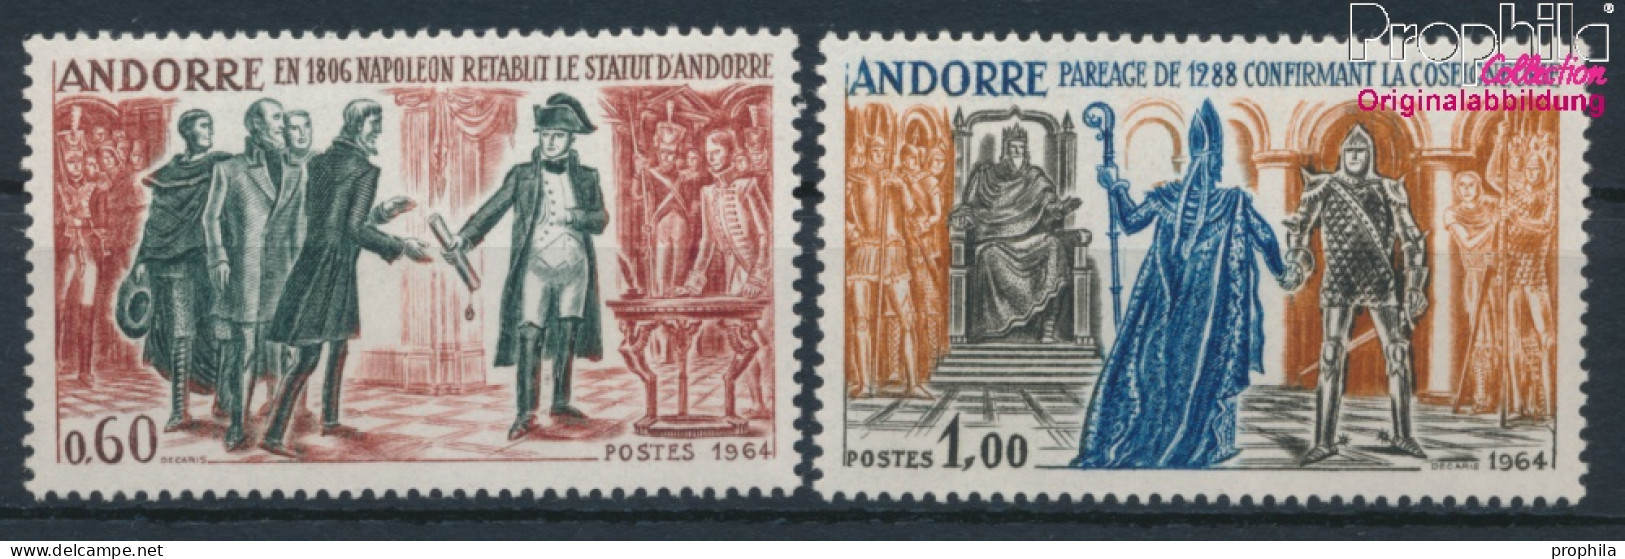 Andorra - Französische Post 183-184 (kompl.Ausg.) Postfrisch 1964 Geschichtsbilder (10368755 - Unused Stamps